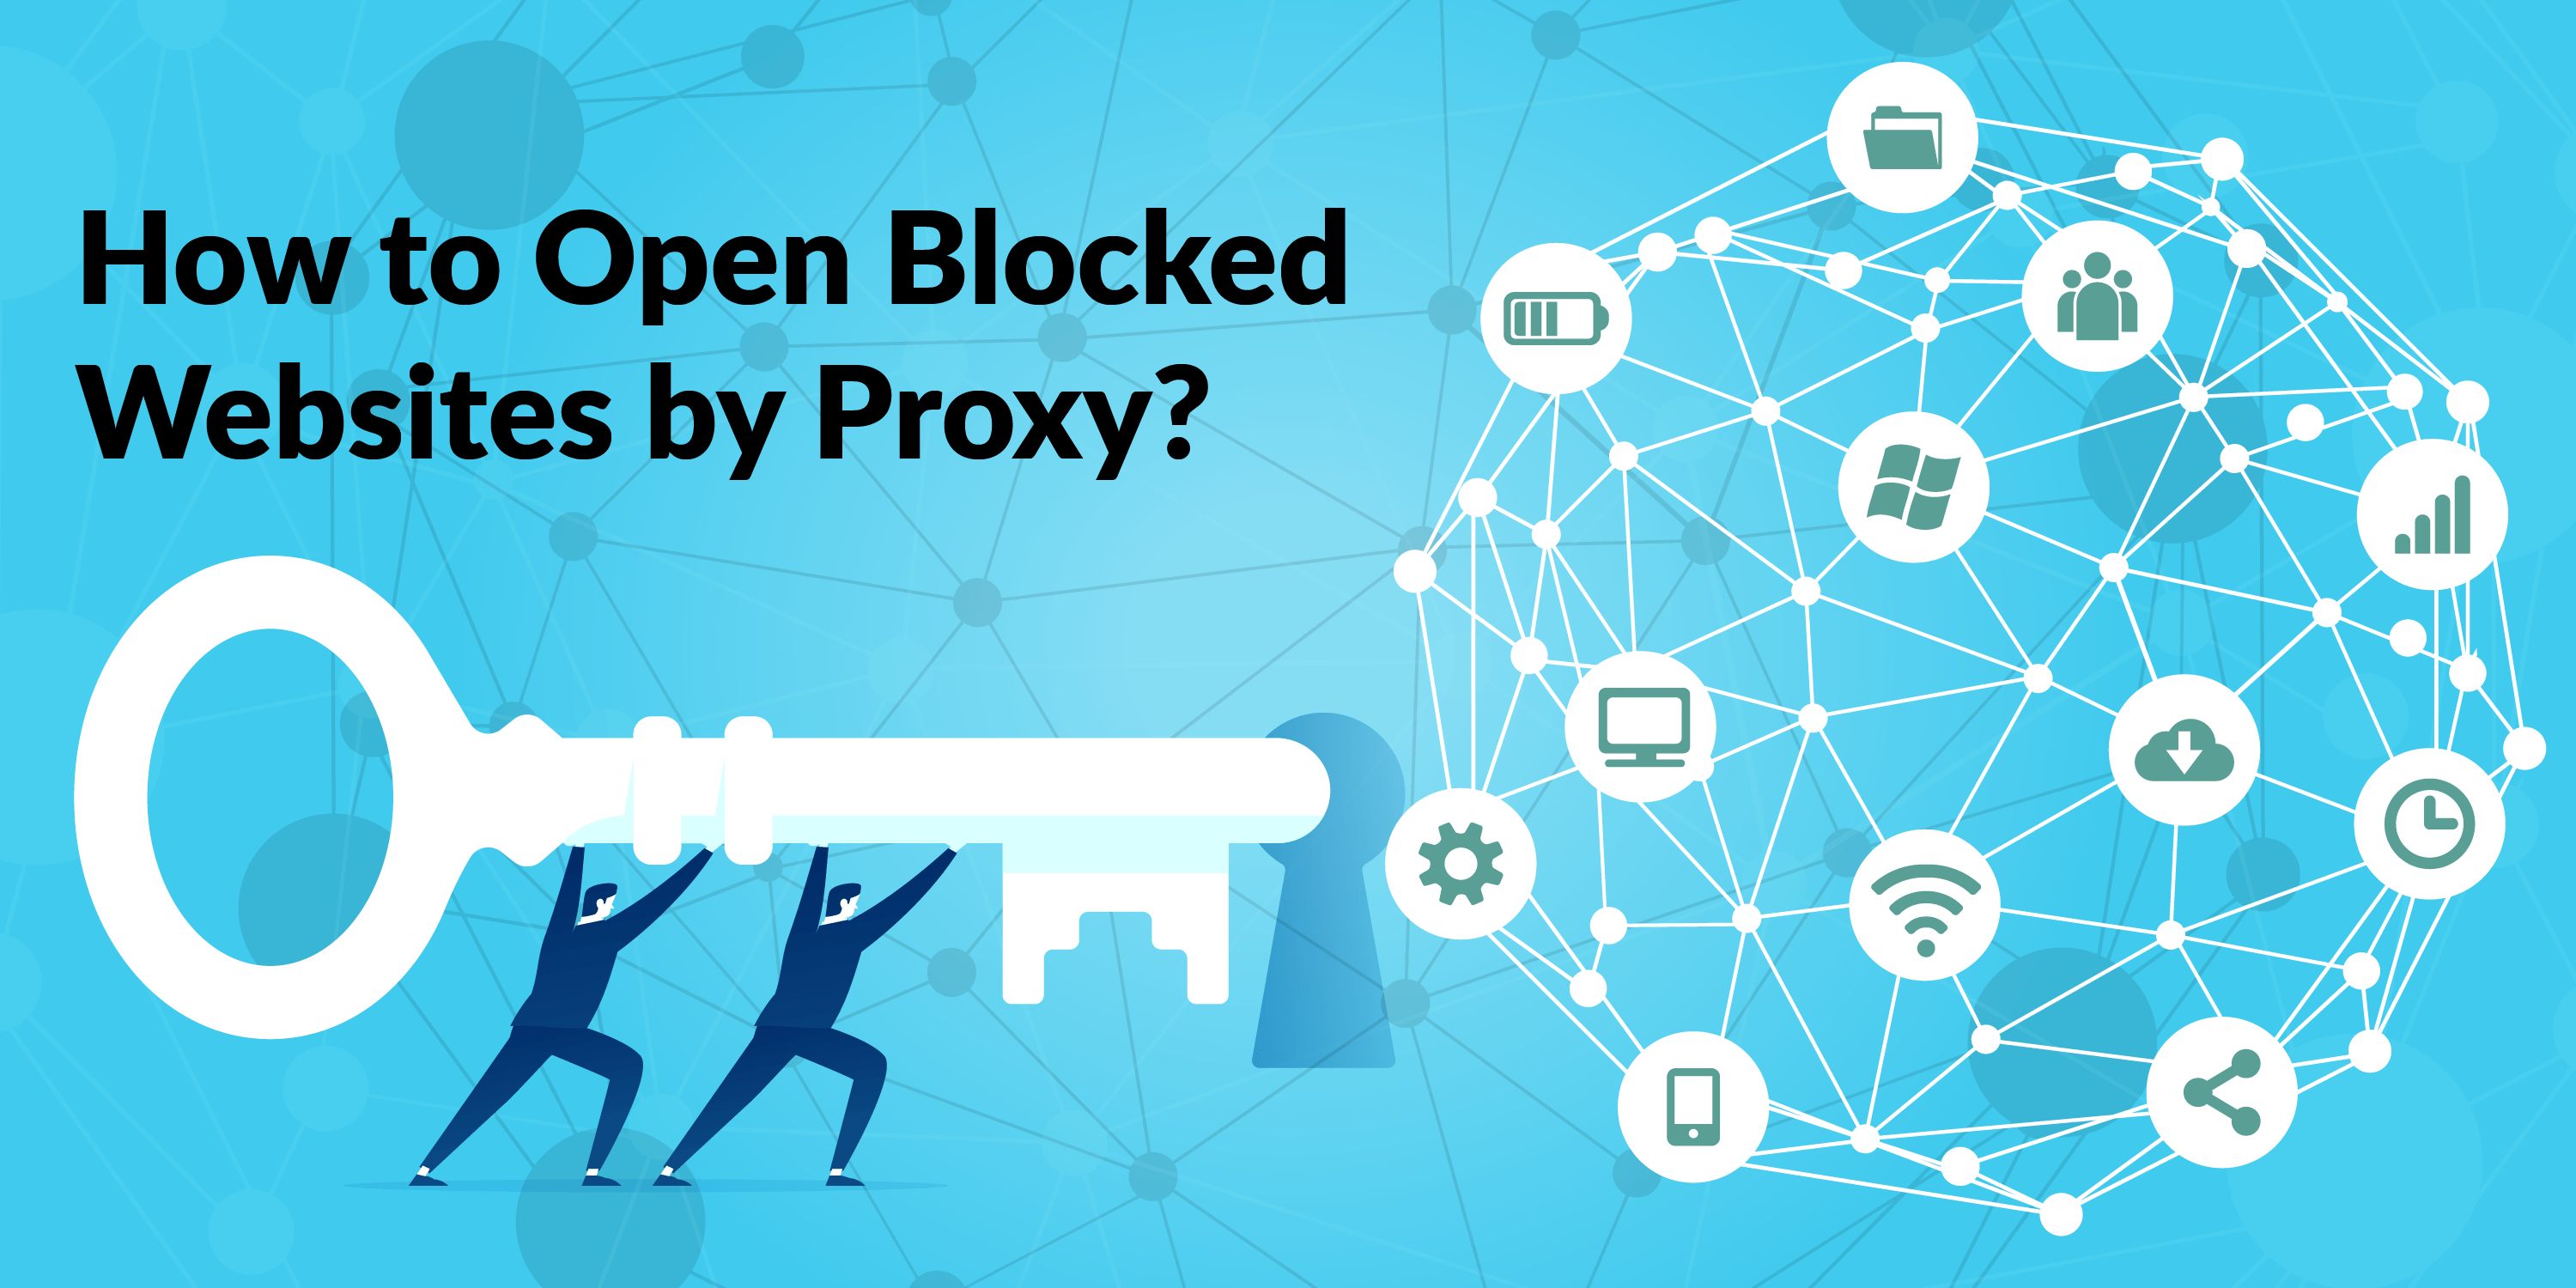 OPEN BLOCKED WEBSITES BY PROXY